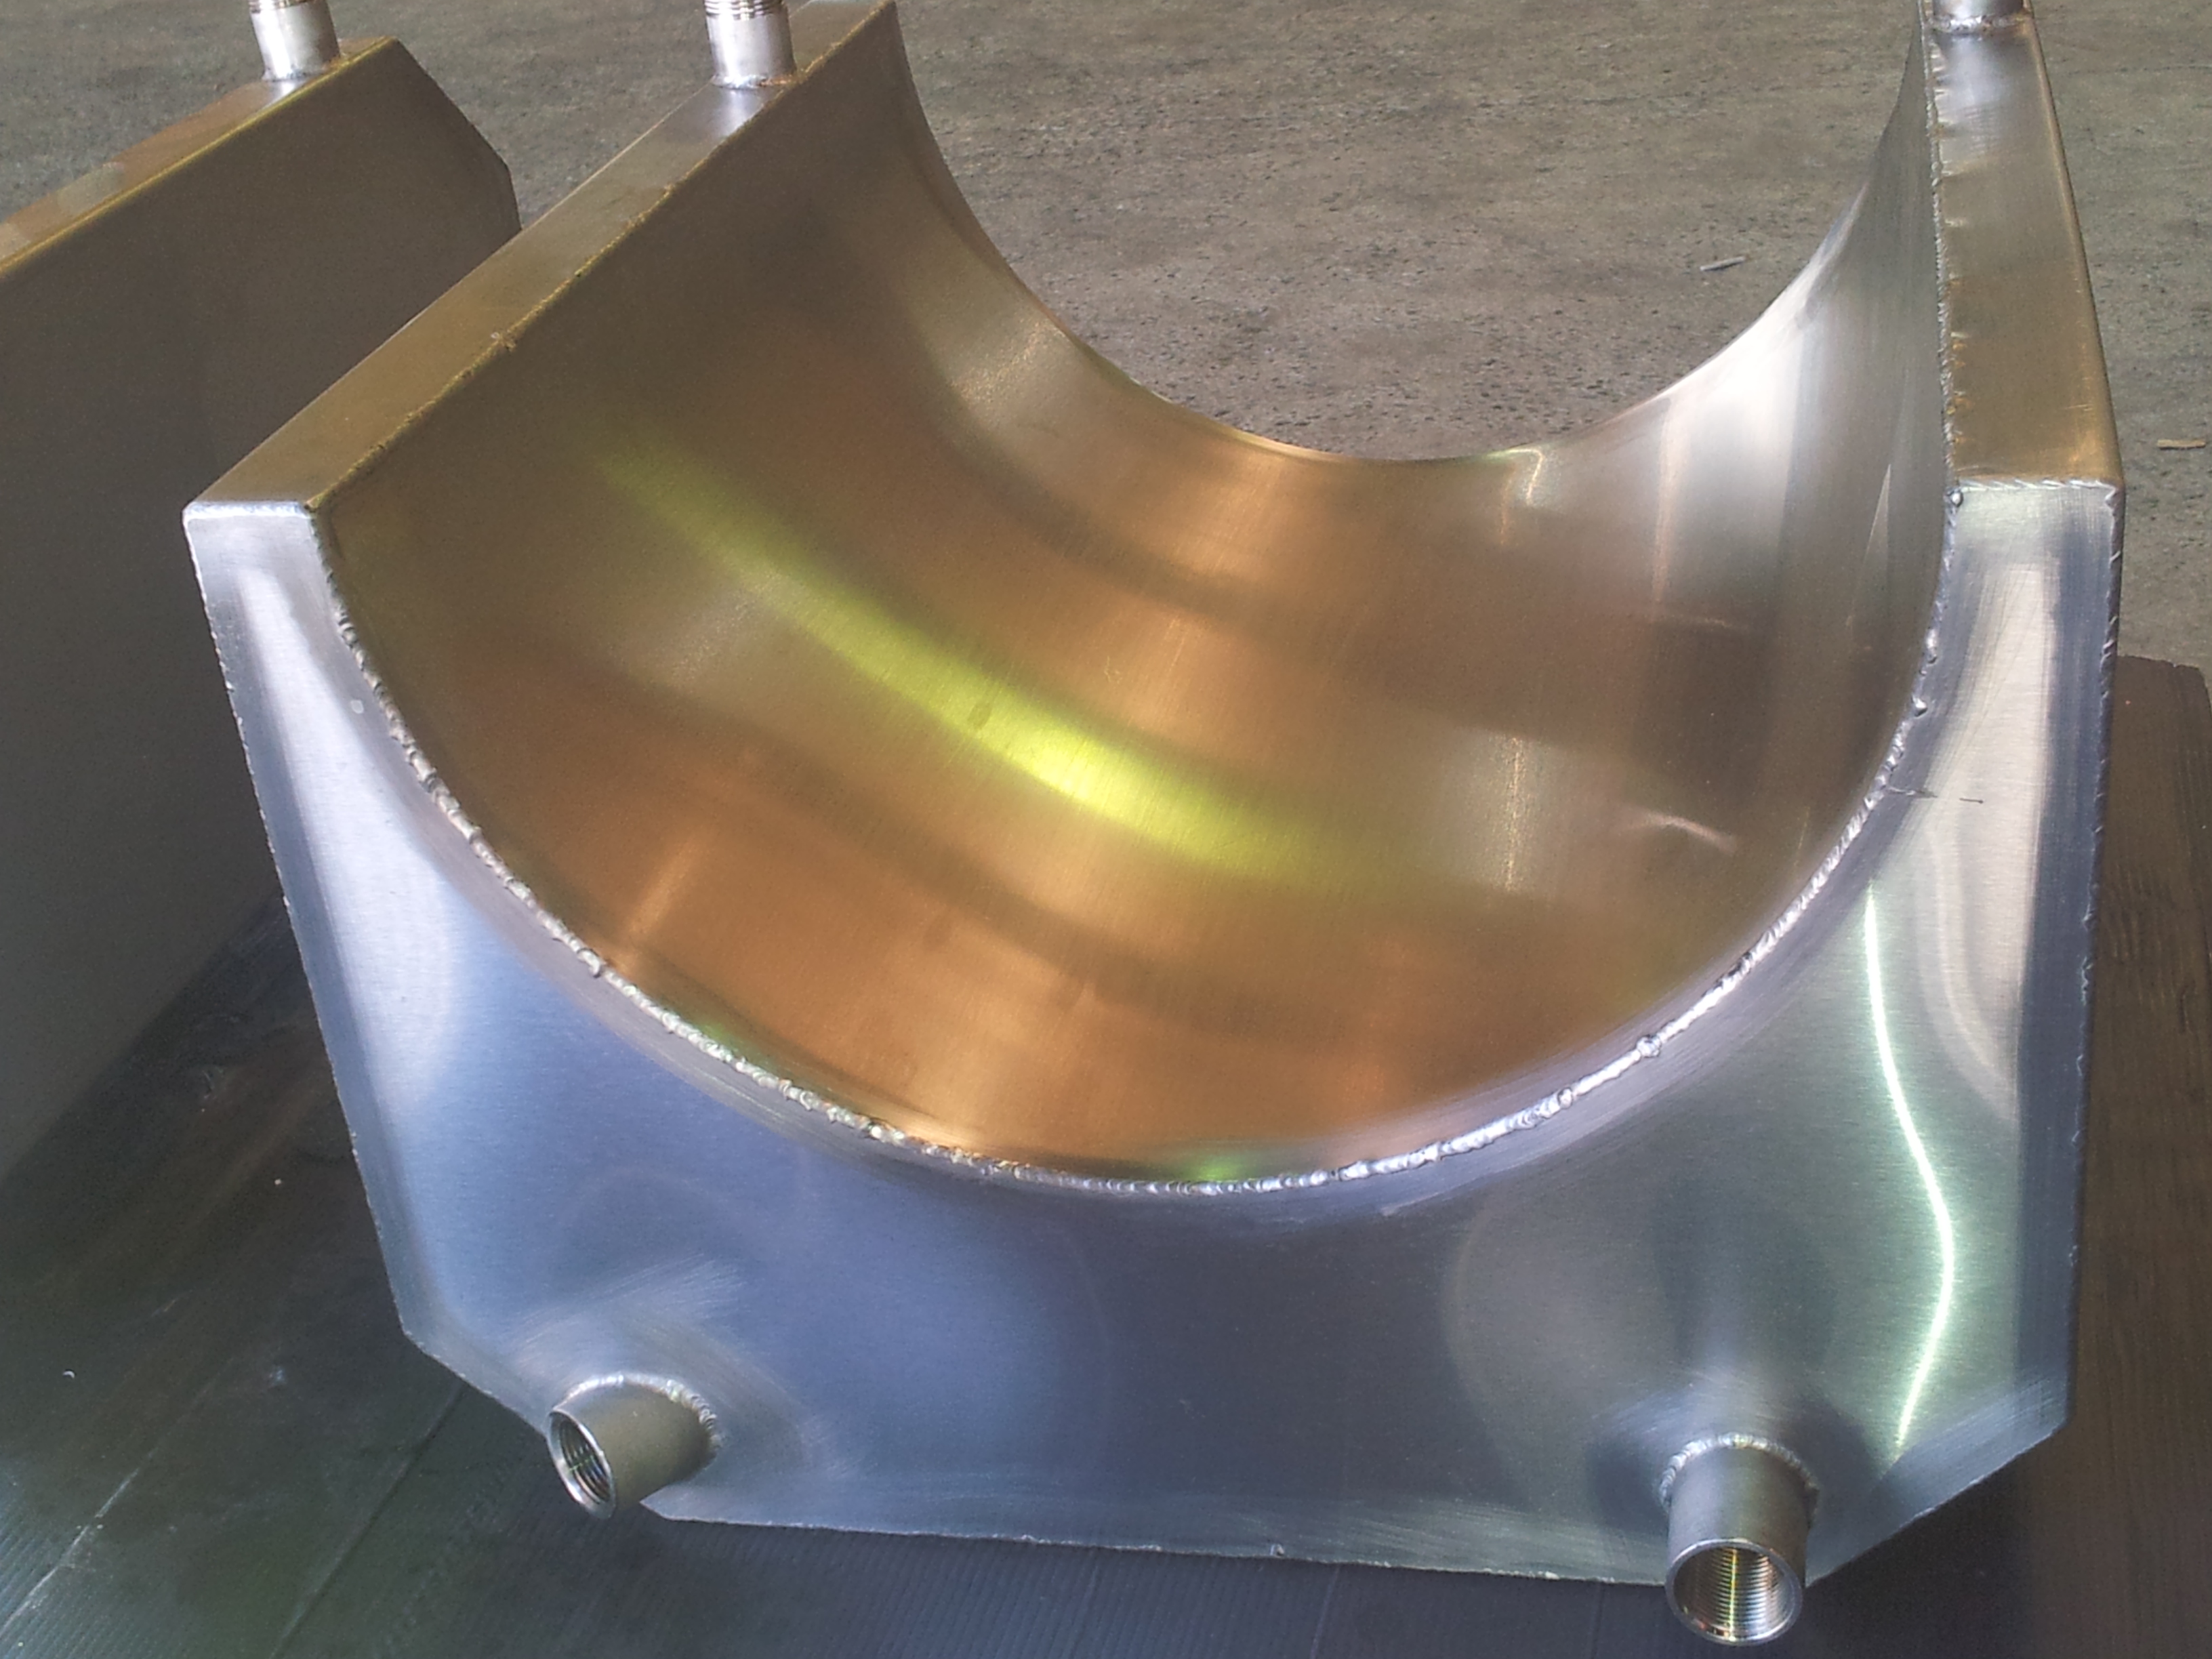 Allan Metal Fabrications Pty Ltd Wingfield (08) 8244 7100